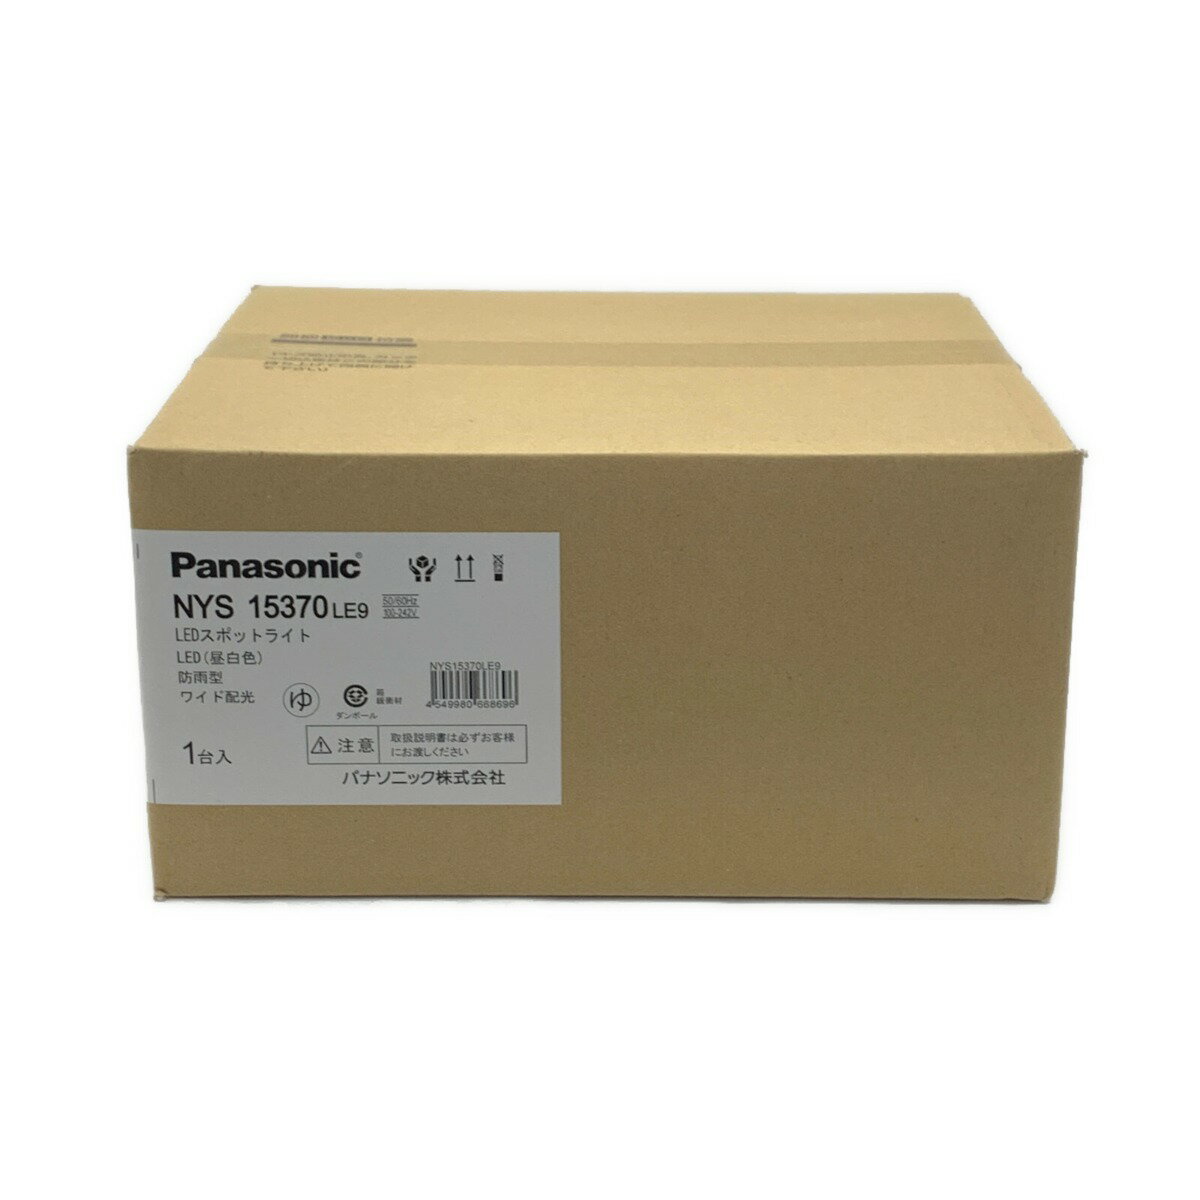 ☆☆【中古】Panasonic パナソニック 《 LEDスポットライト 》防雨型 / ワイド配光 / NYS15370LE9 Nランク